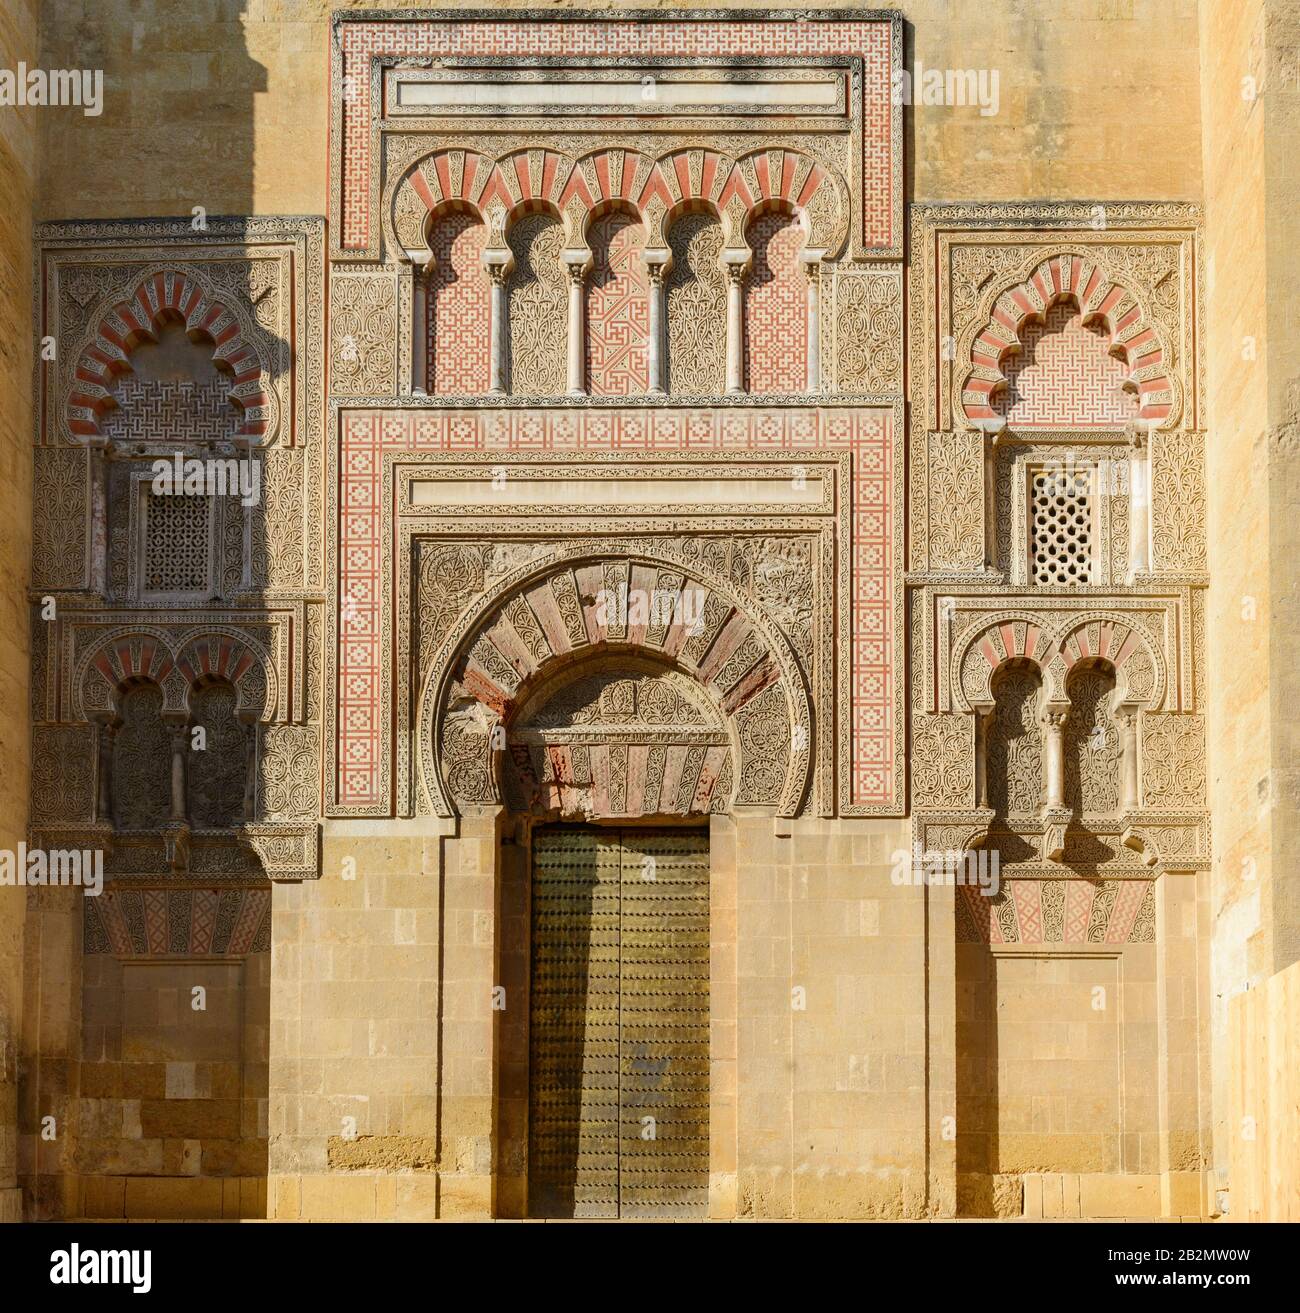 Eine aufwändig geschnitzte maurische Tür zum Gelände der Mezquita-/Mesquita-Moschee-Kathedrale von Córdoba, Cordoba Spanien Stockfoto